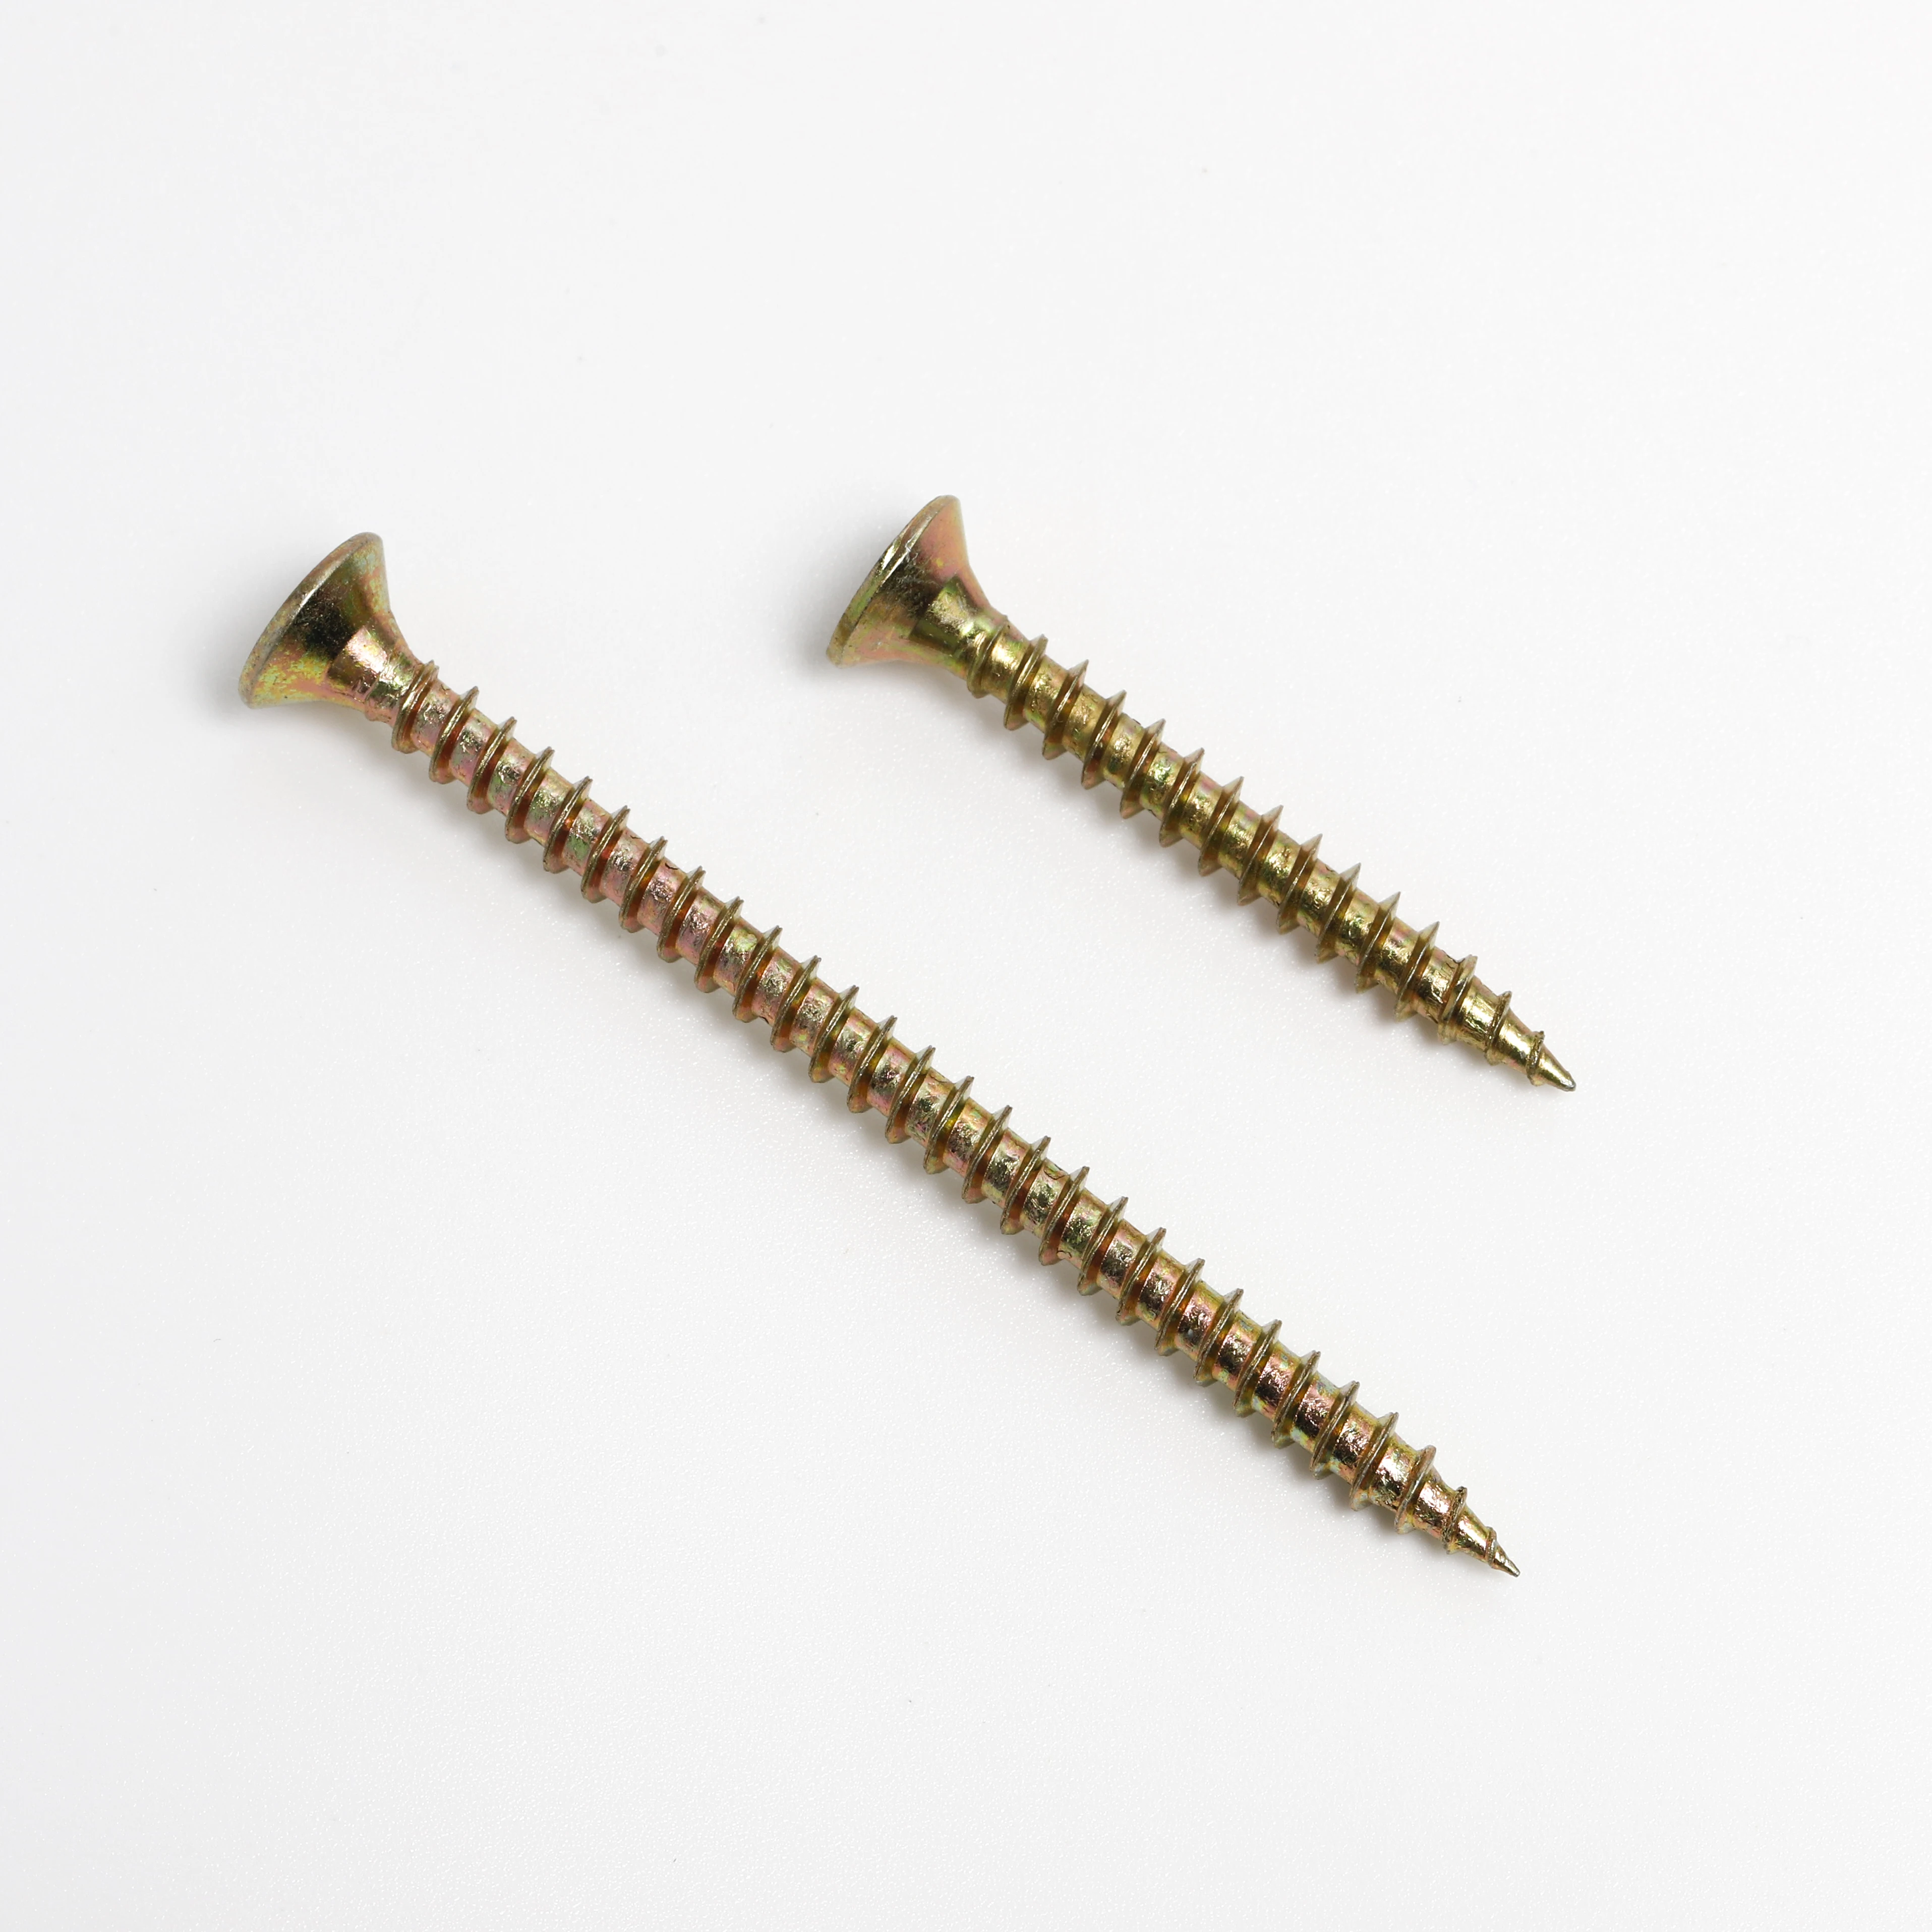 10 x 4" Torx zinc yellow flat head wood screws 250pc. 